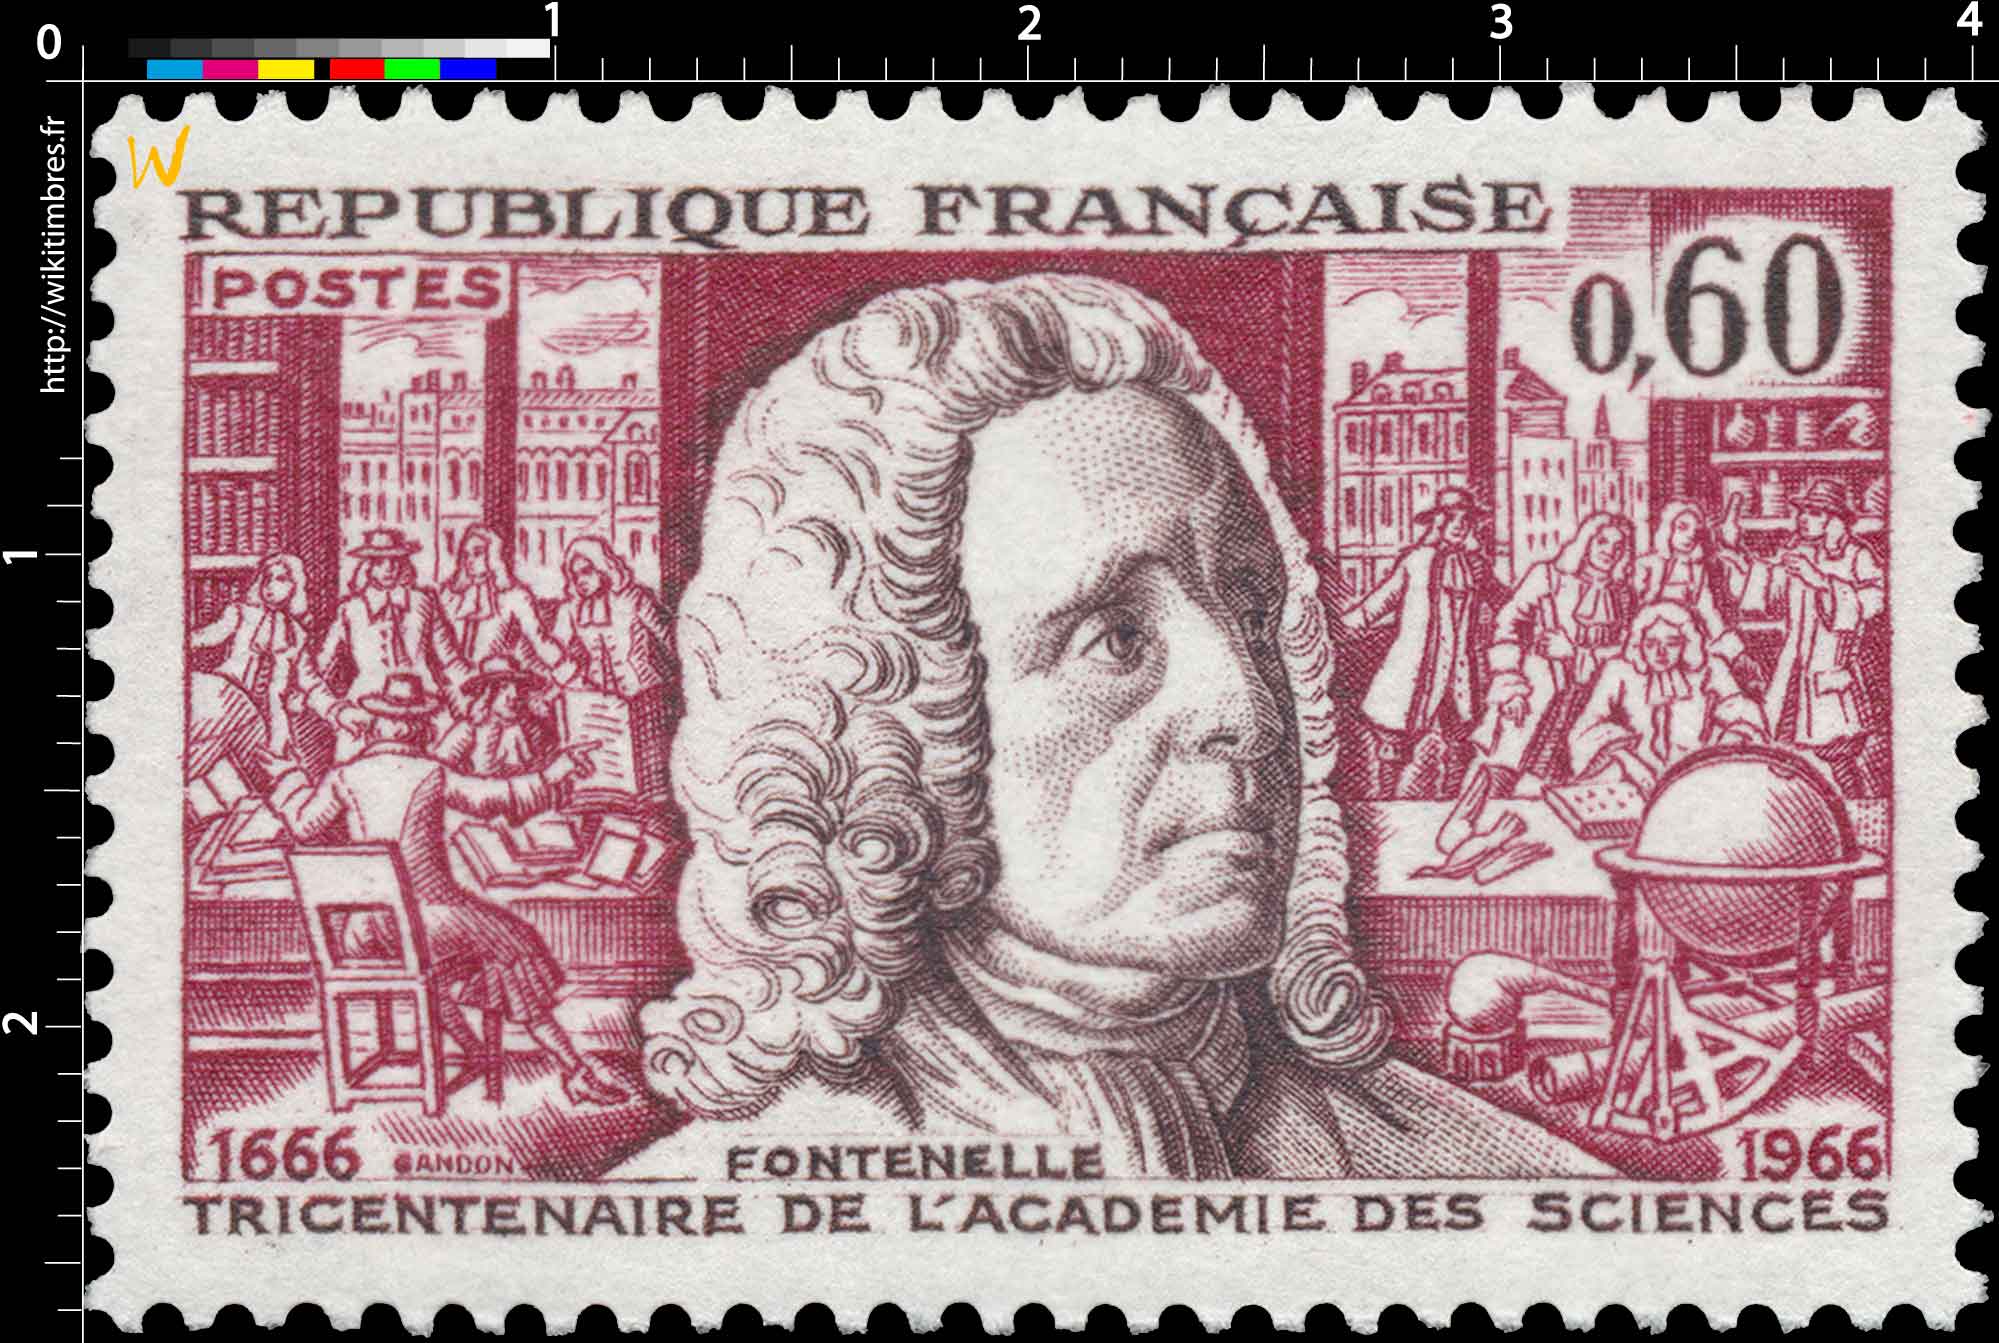 FONTENELLE TRICENTENAIRE DE L'ACADÉMIE DES SCIENCES 1666-1966